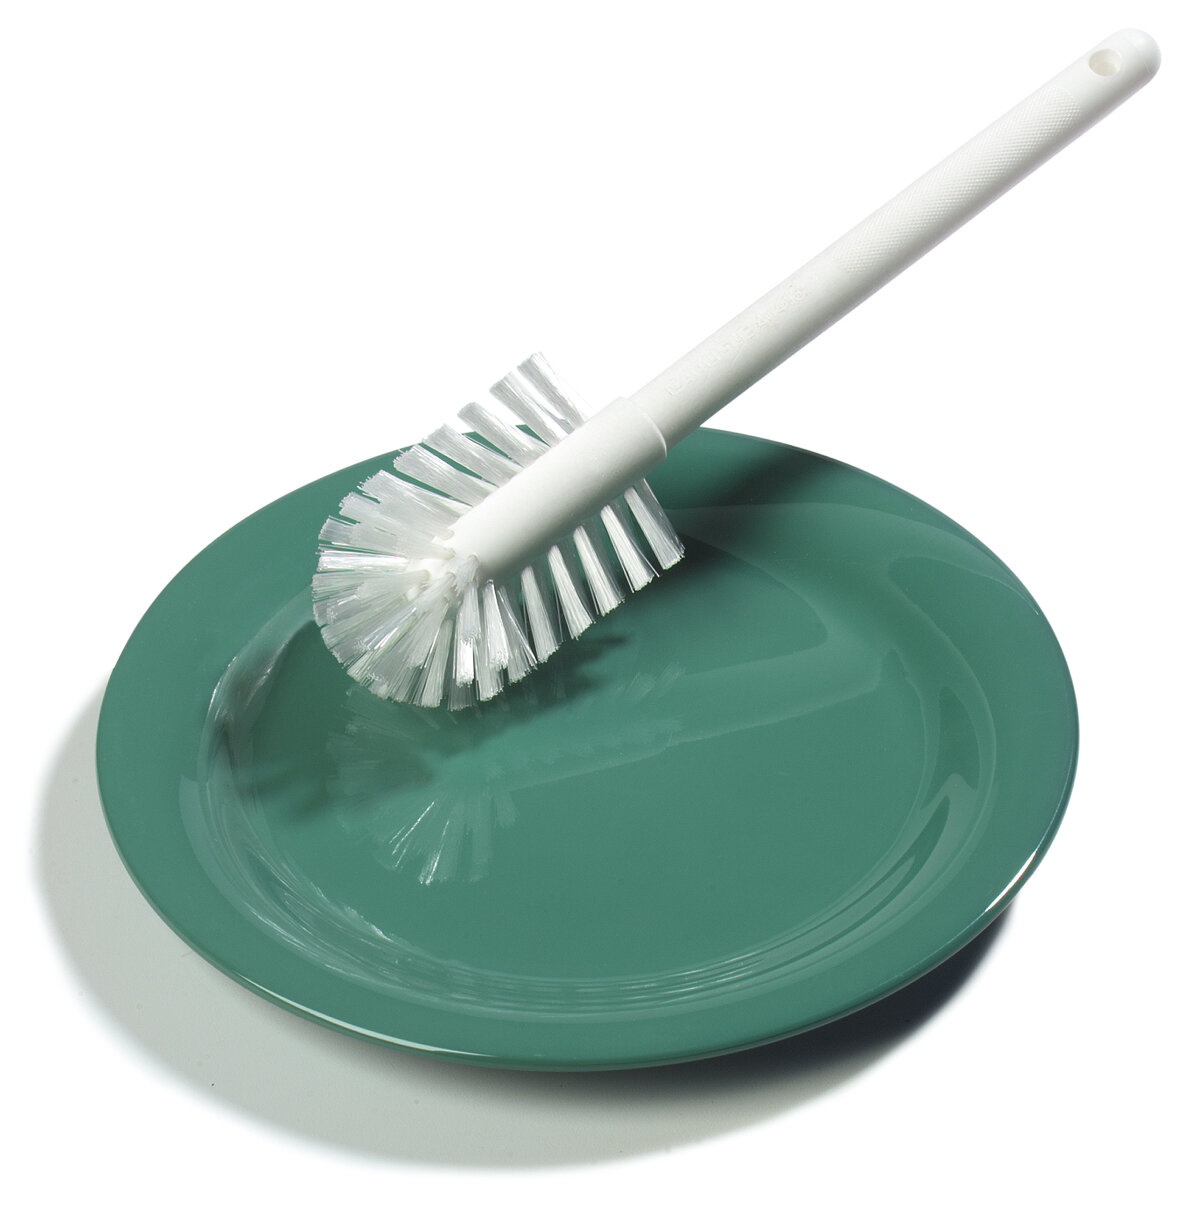 Dish-eze Dish Brush Dish Cleaning Brush